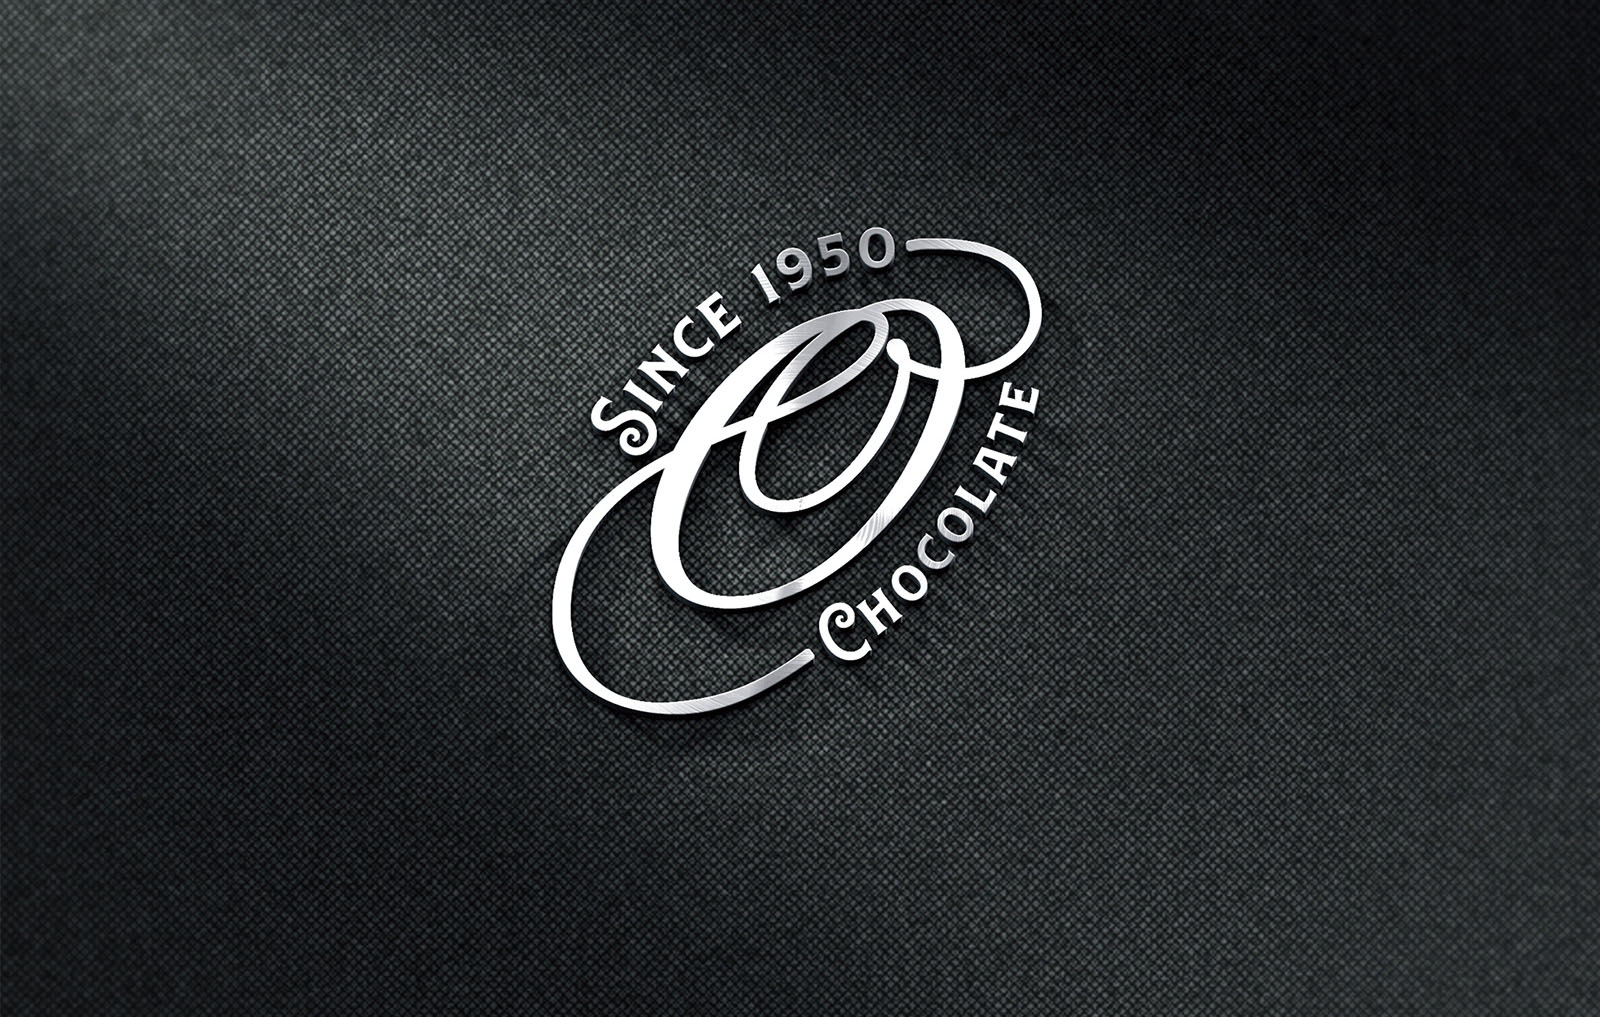 o2_logo_06_26_19_garryvedadesign_web.jpg